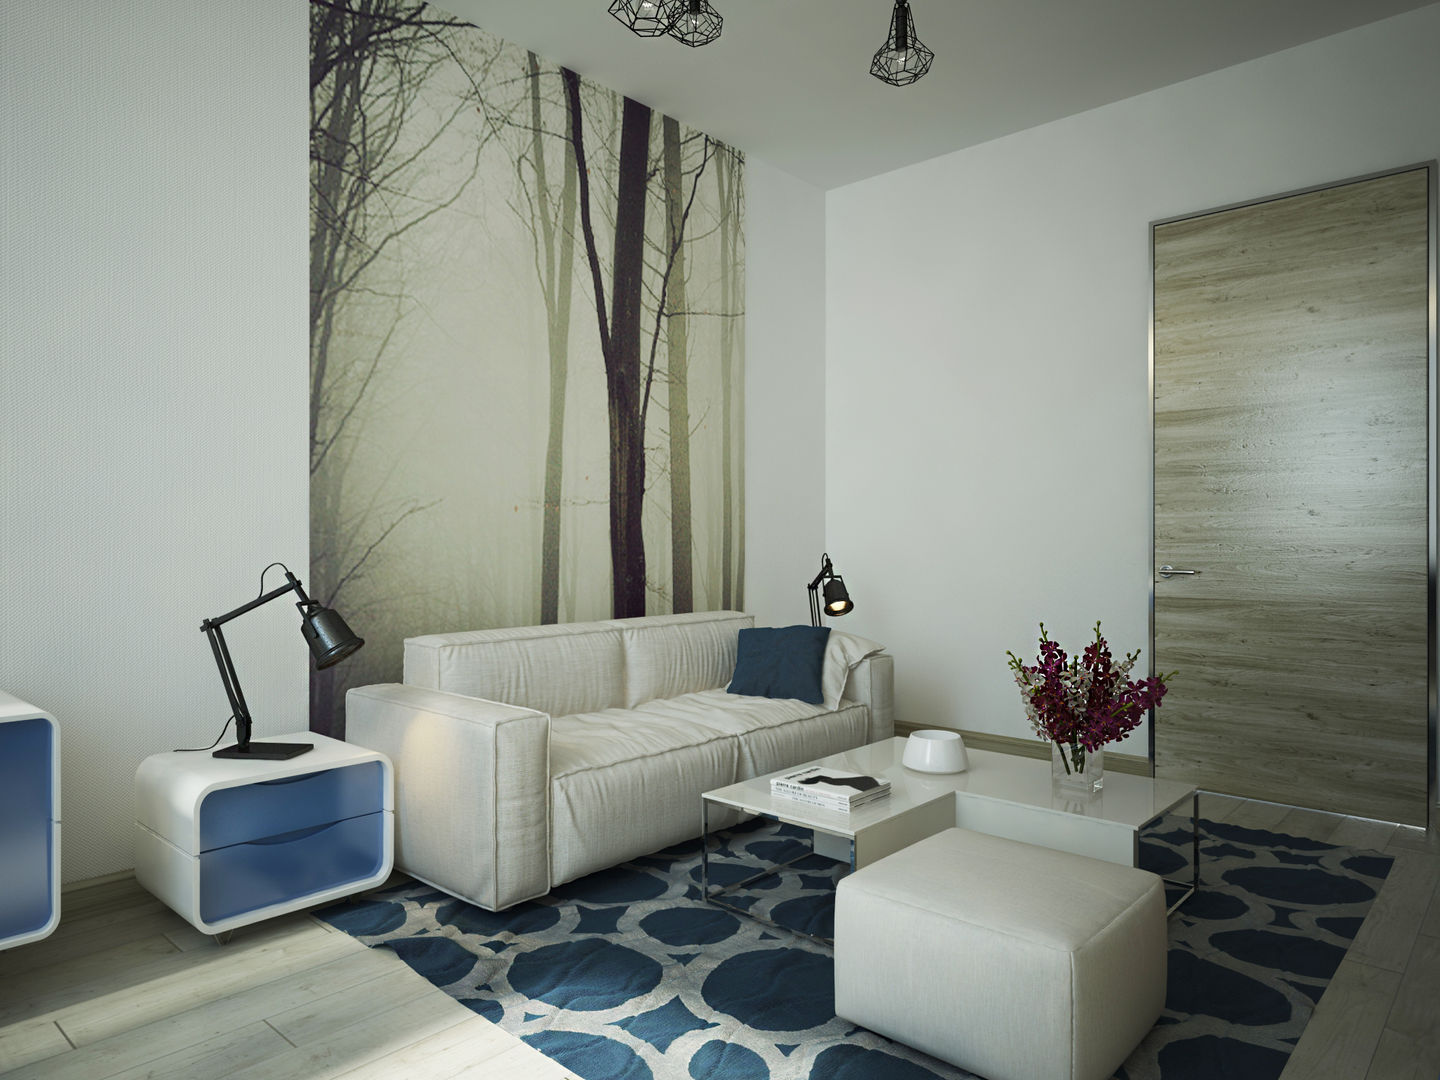 Квартира в современном минимализме, Polovets design studio Polovets design studio Dormitorios minimalistas